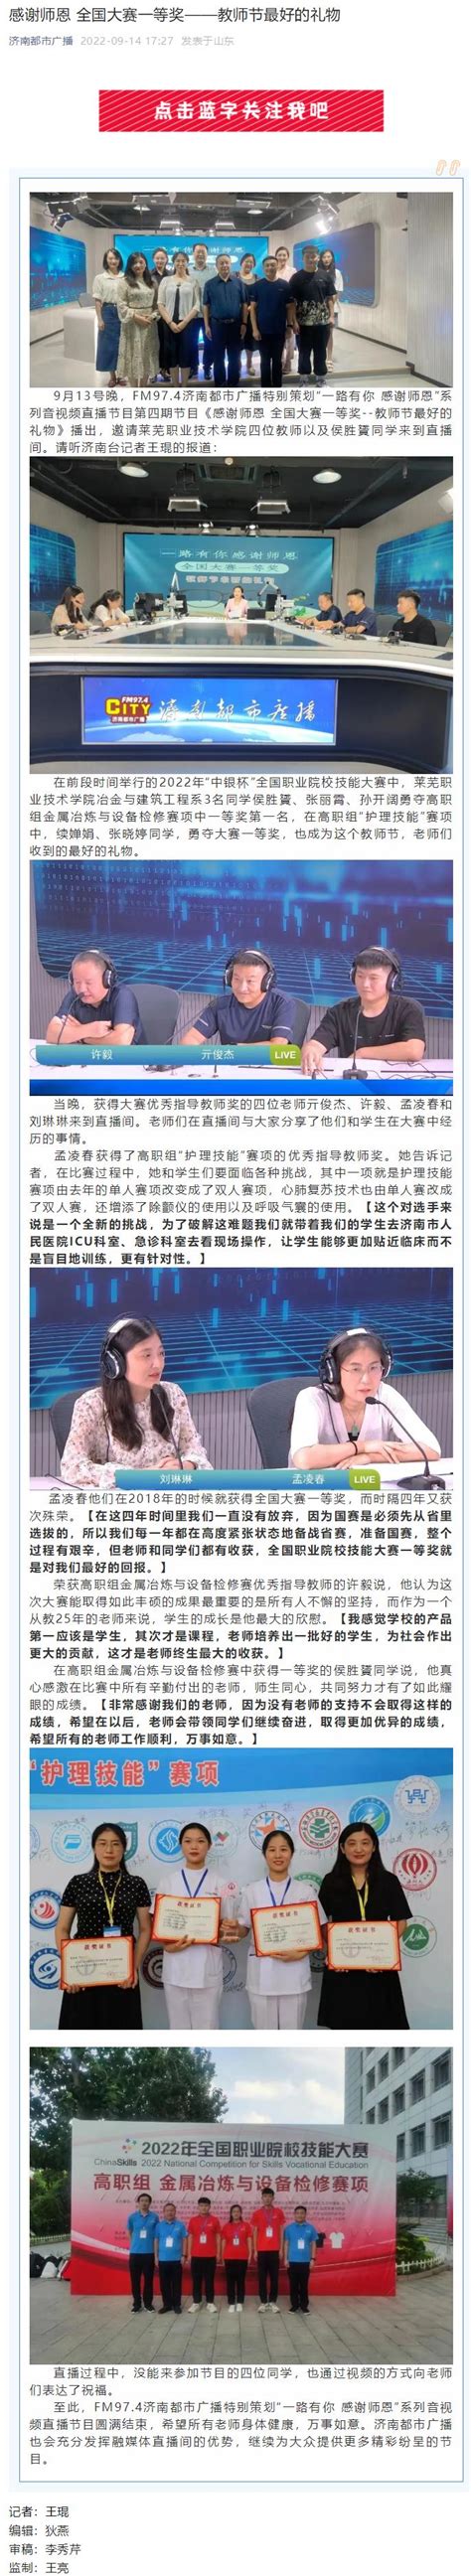 2019内蒙古广播电视台少儿频道六一晚会_腾讯视频